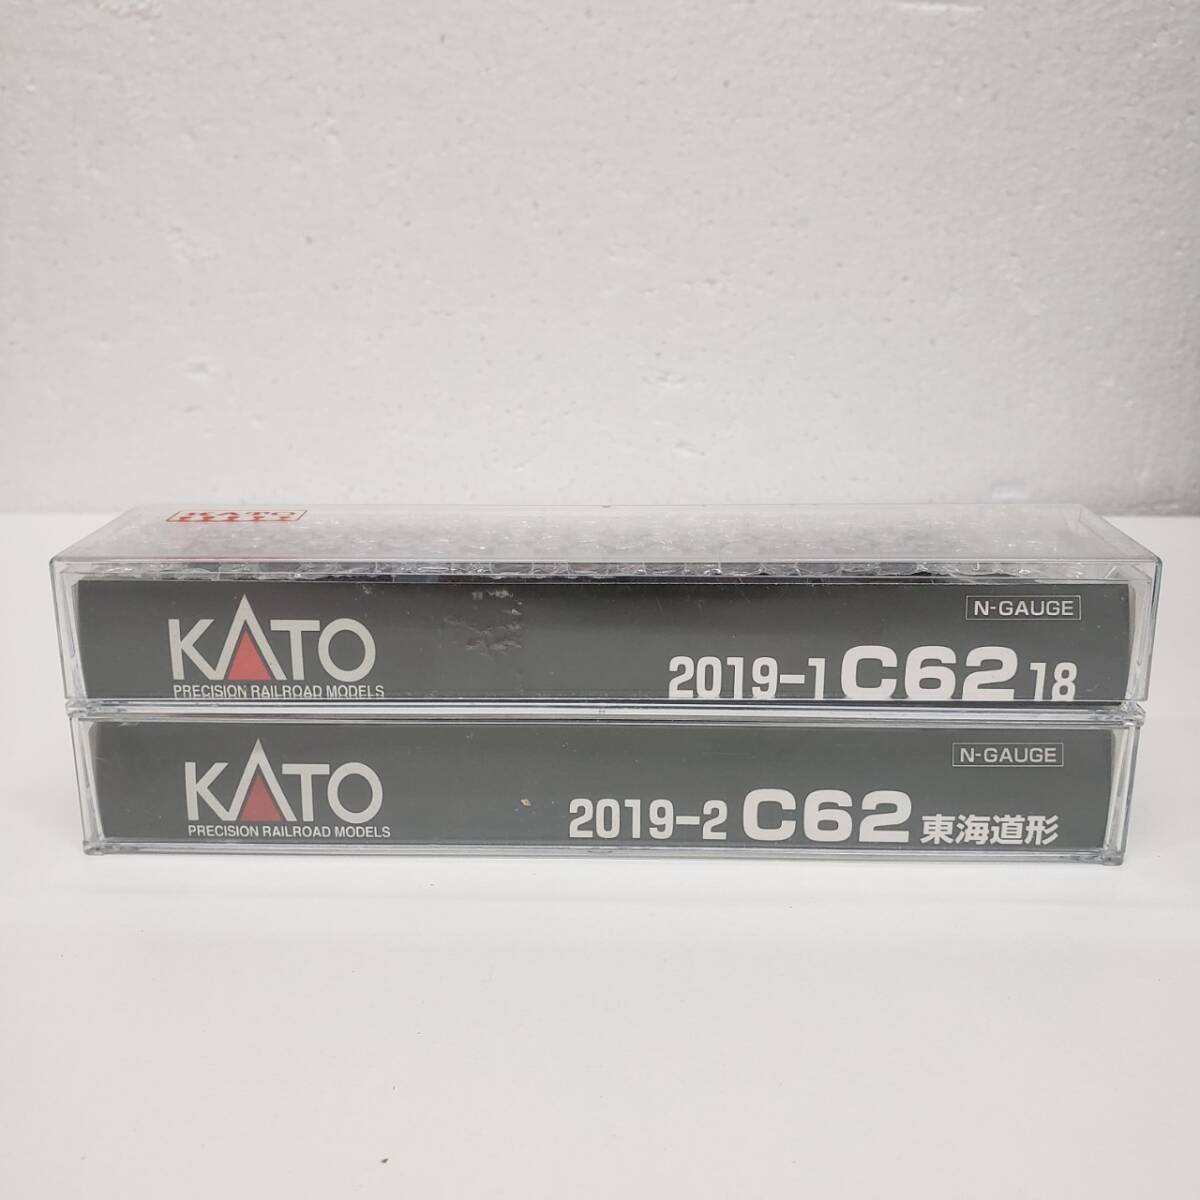 【C-22435a】1円スタート KATO 2019-1 C62 18 2019-2 C62 東海道形 おまとめ Nゲージ N-GAUGE 鉄道型_画像4